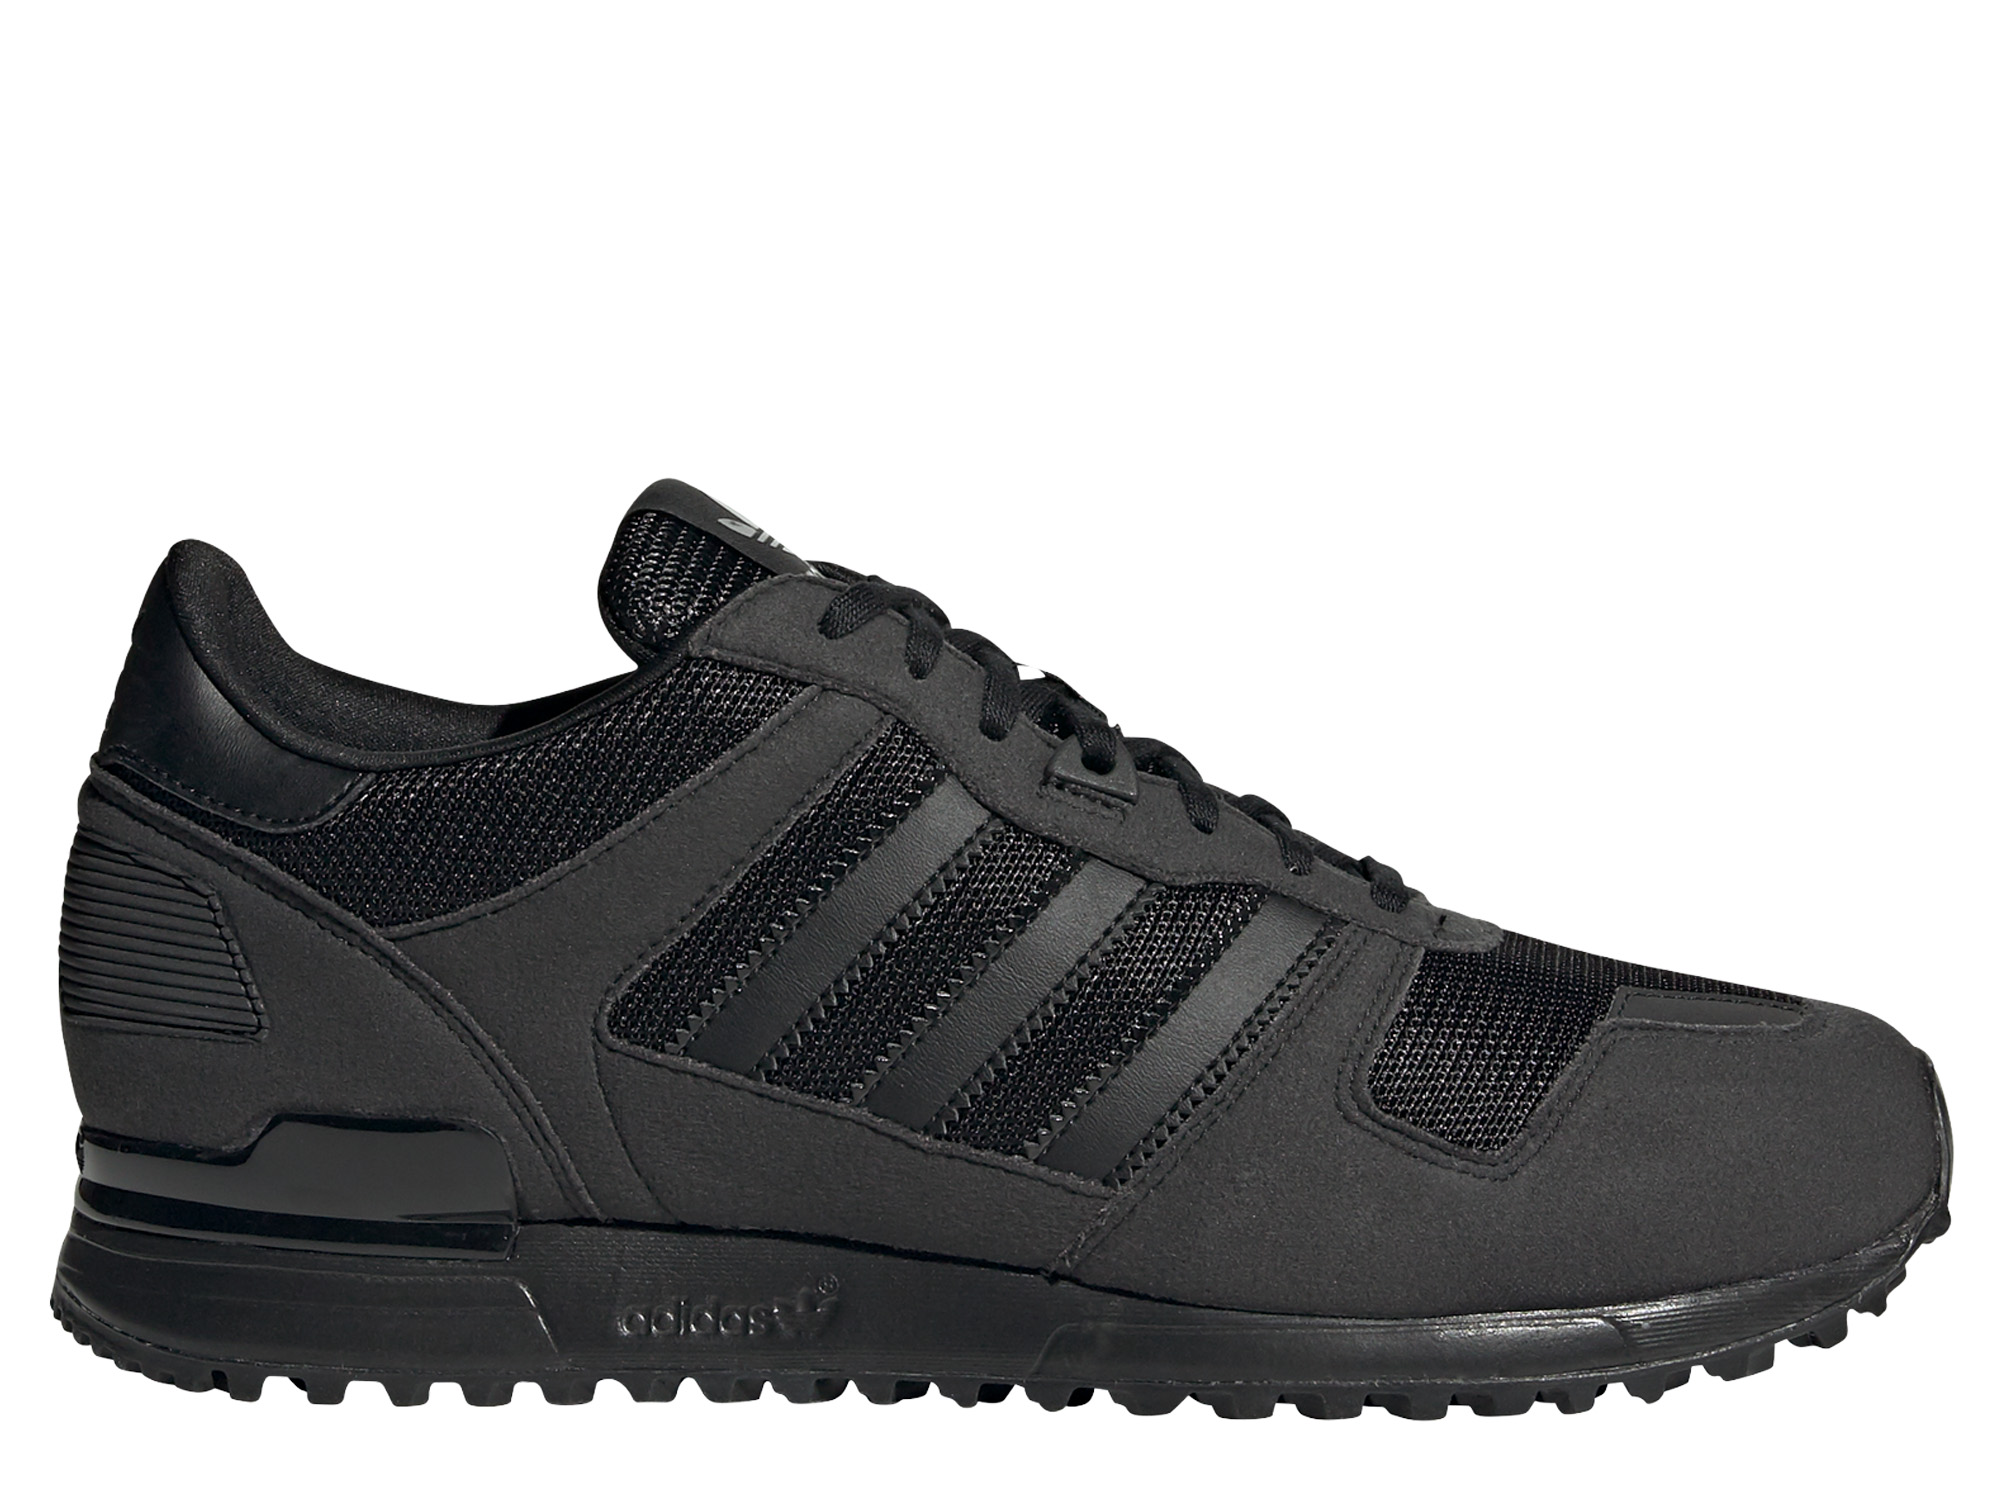 Adidas Originals ZX 700 Herren Sneaker